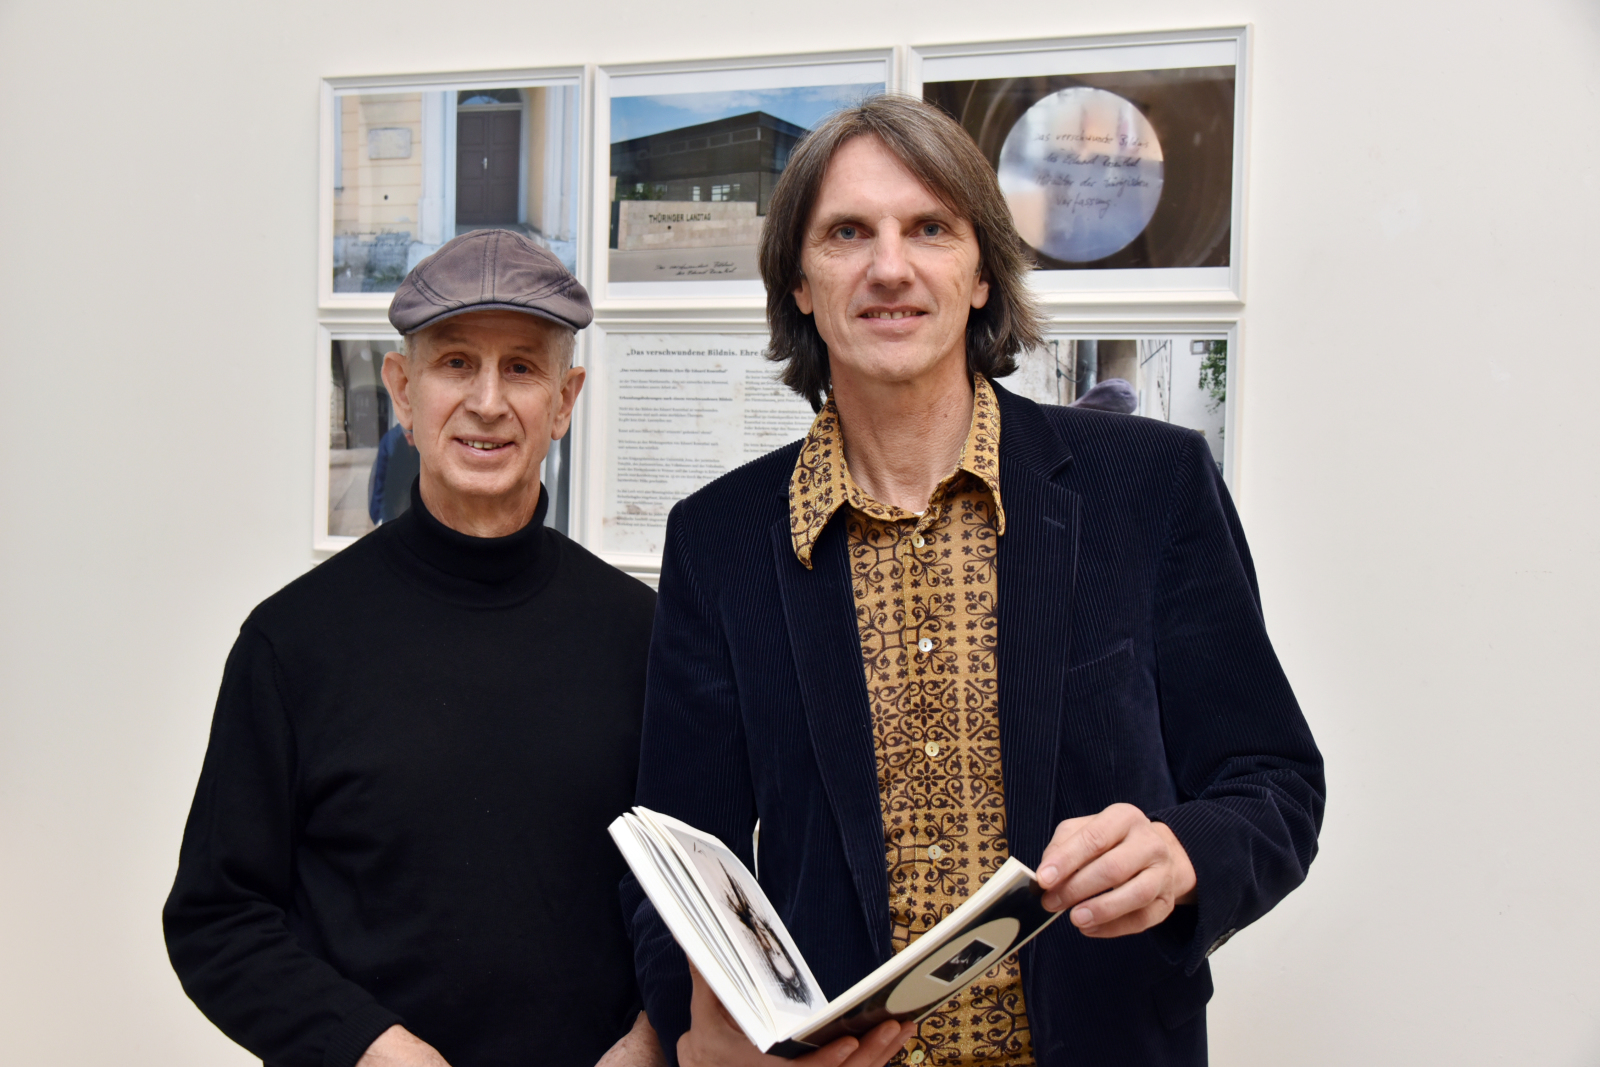 Horst Hoheisel und Andreas Knitz stehen vor einer Wand an der gerahmte Bilder angebracht sind. Der rechts stehende Andreas Knitz hält ein Buch in er Hand. Beide schauen in die Kamera.